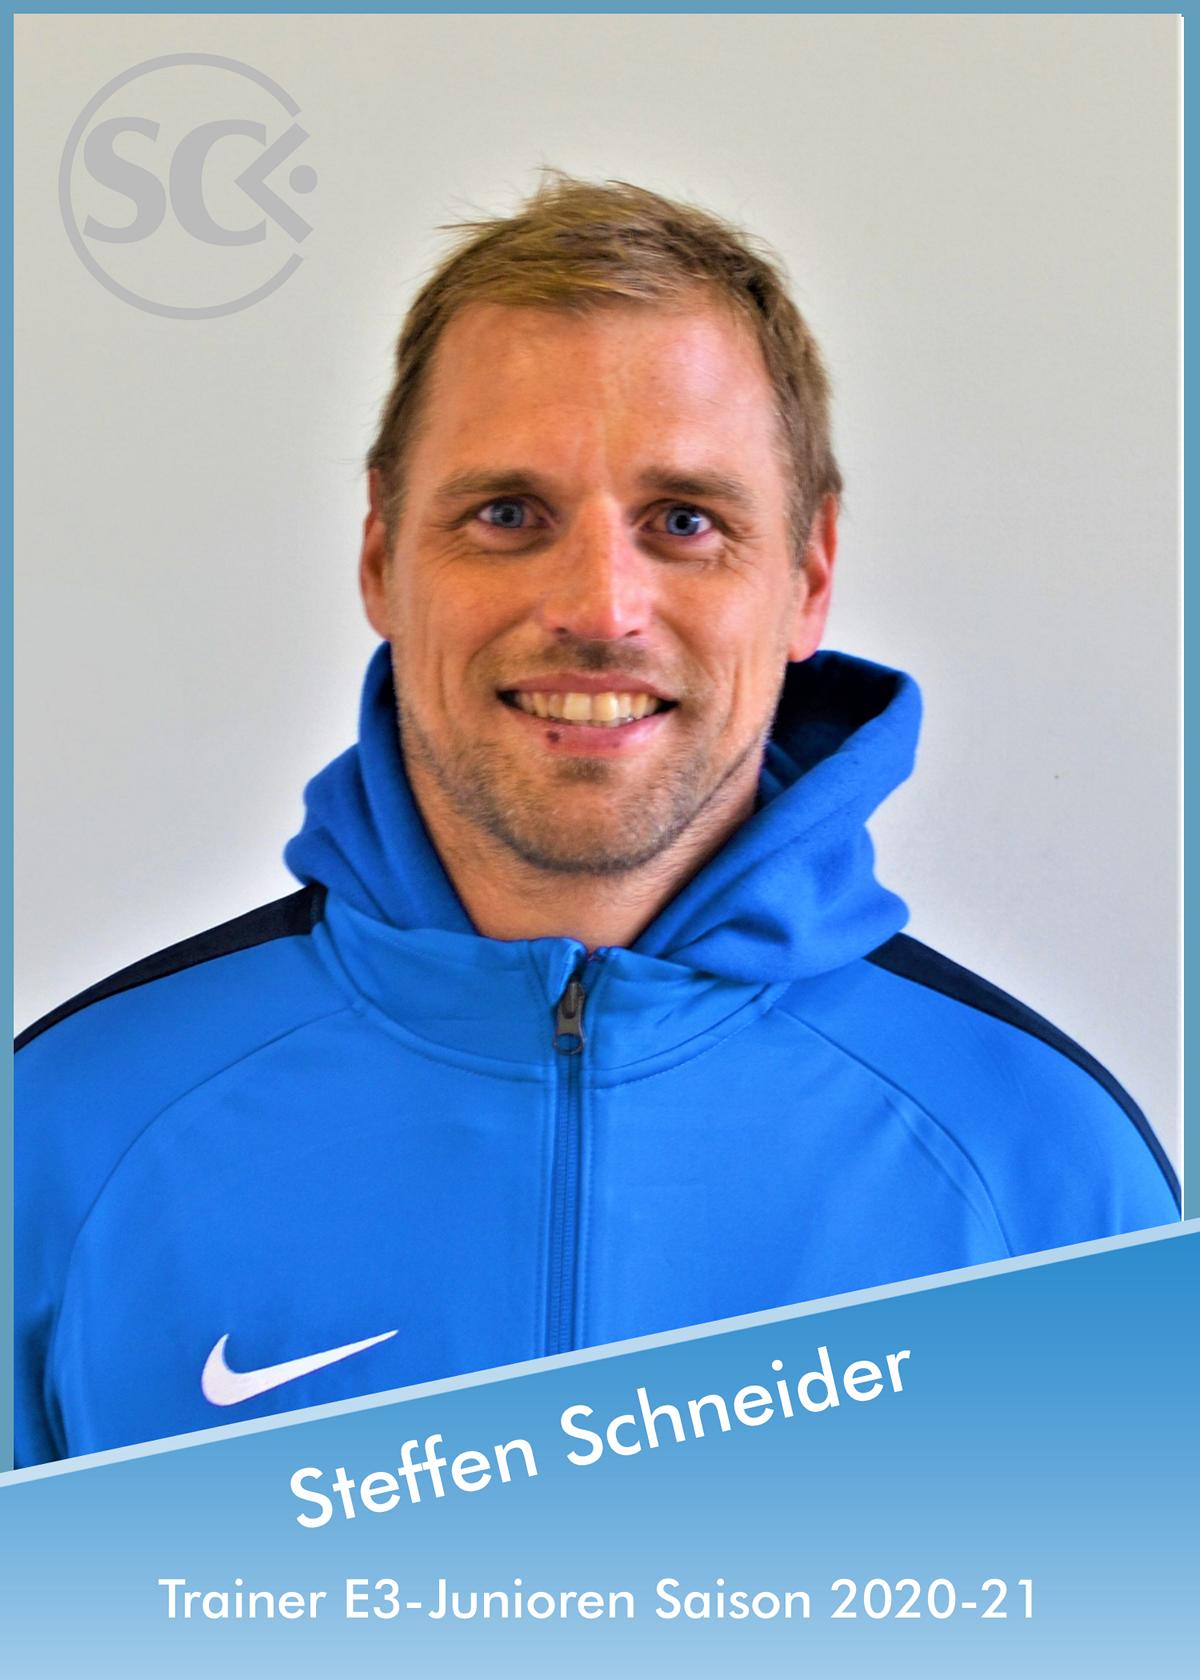 Steffen Schneider